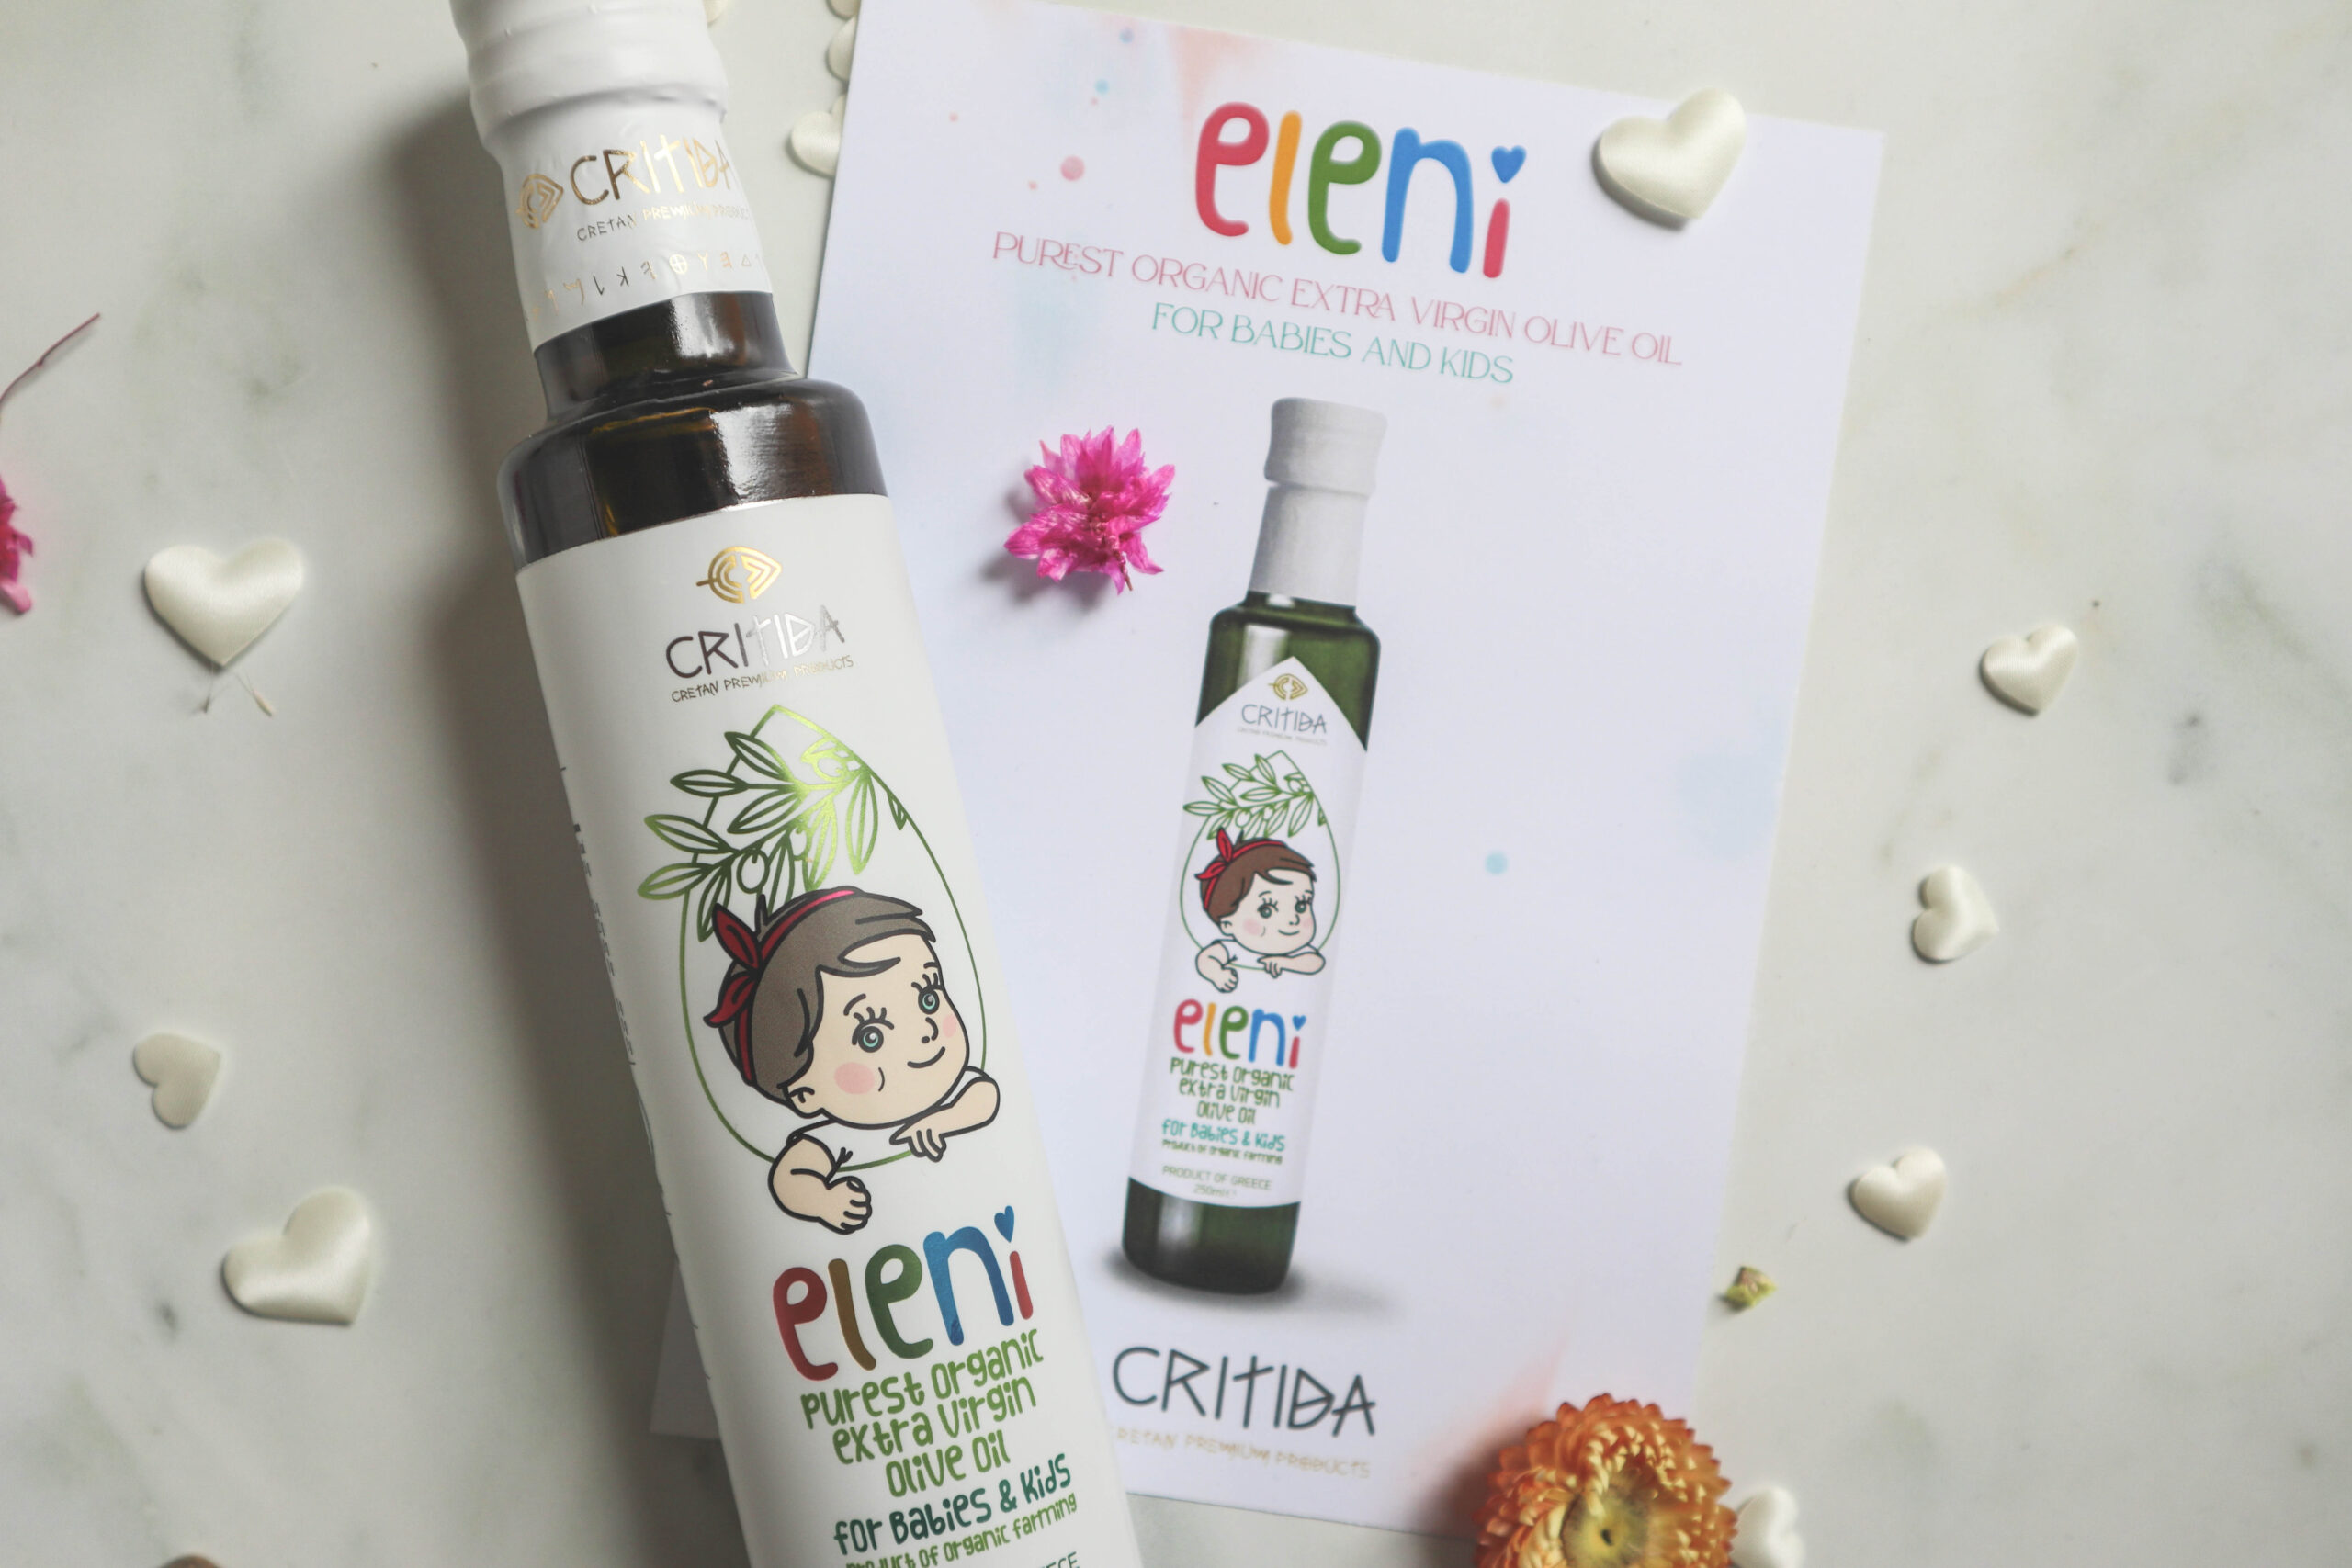 органическое оливковое масло первого отжима для младенцев и детей с Крита